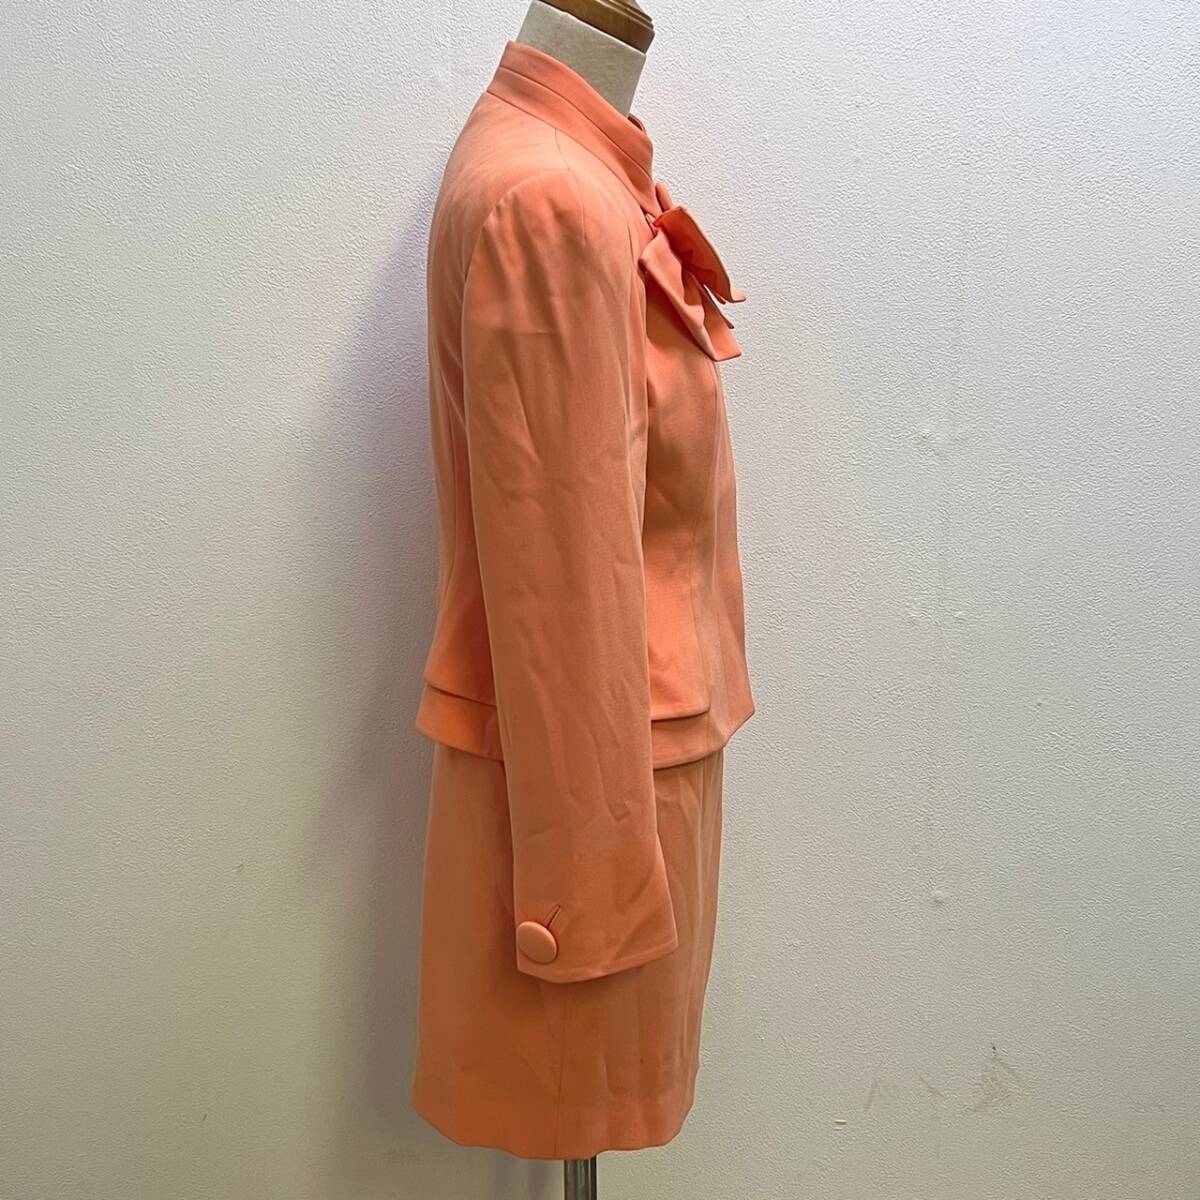 BCg051ハ 80 VELLA/ベラ 銀座マギー スカート スーツ サイズ38 オレンジ ピンク系 ジャケット セットアップ レディース 352-2313 服 洋服の画像3